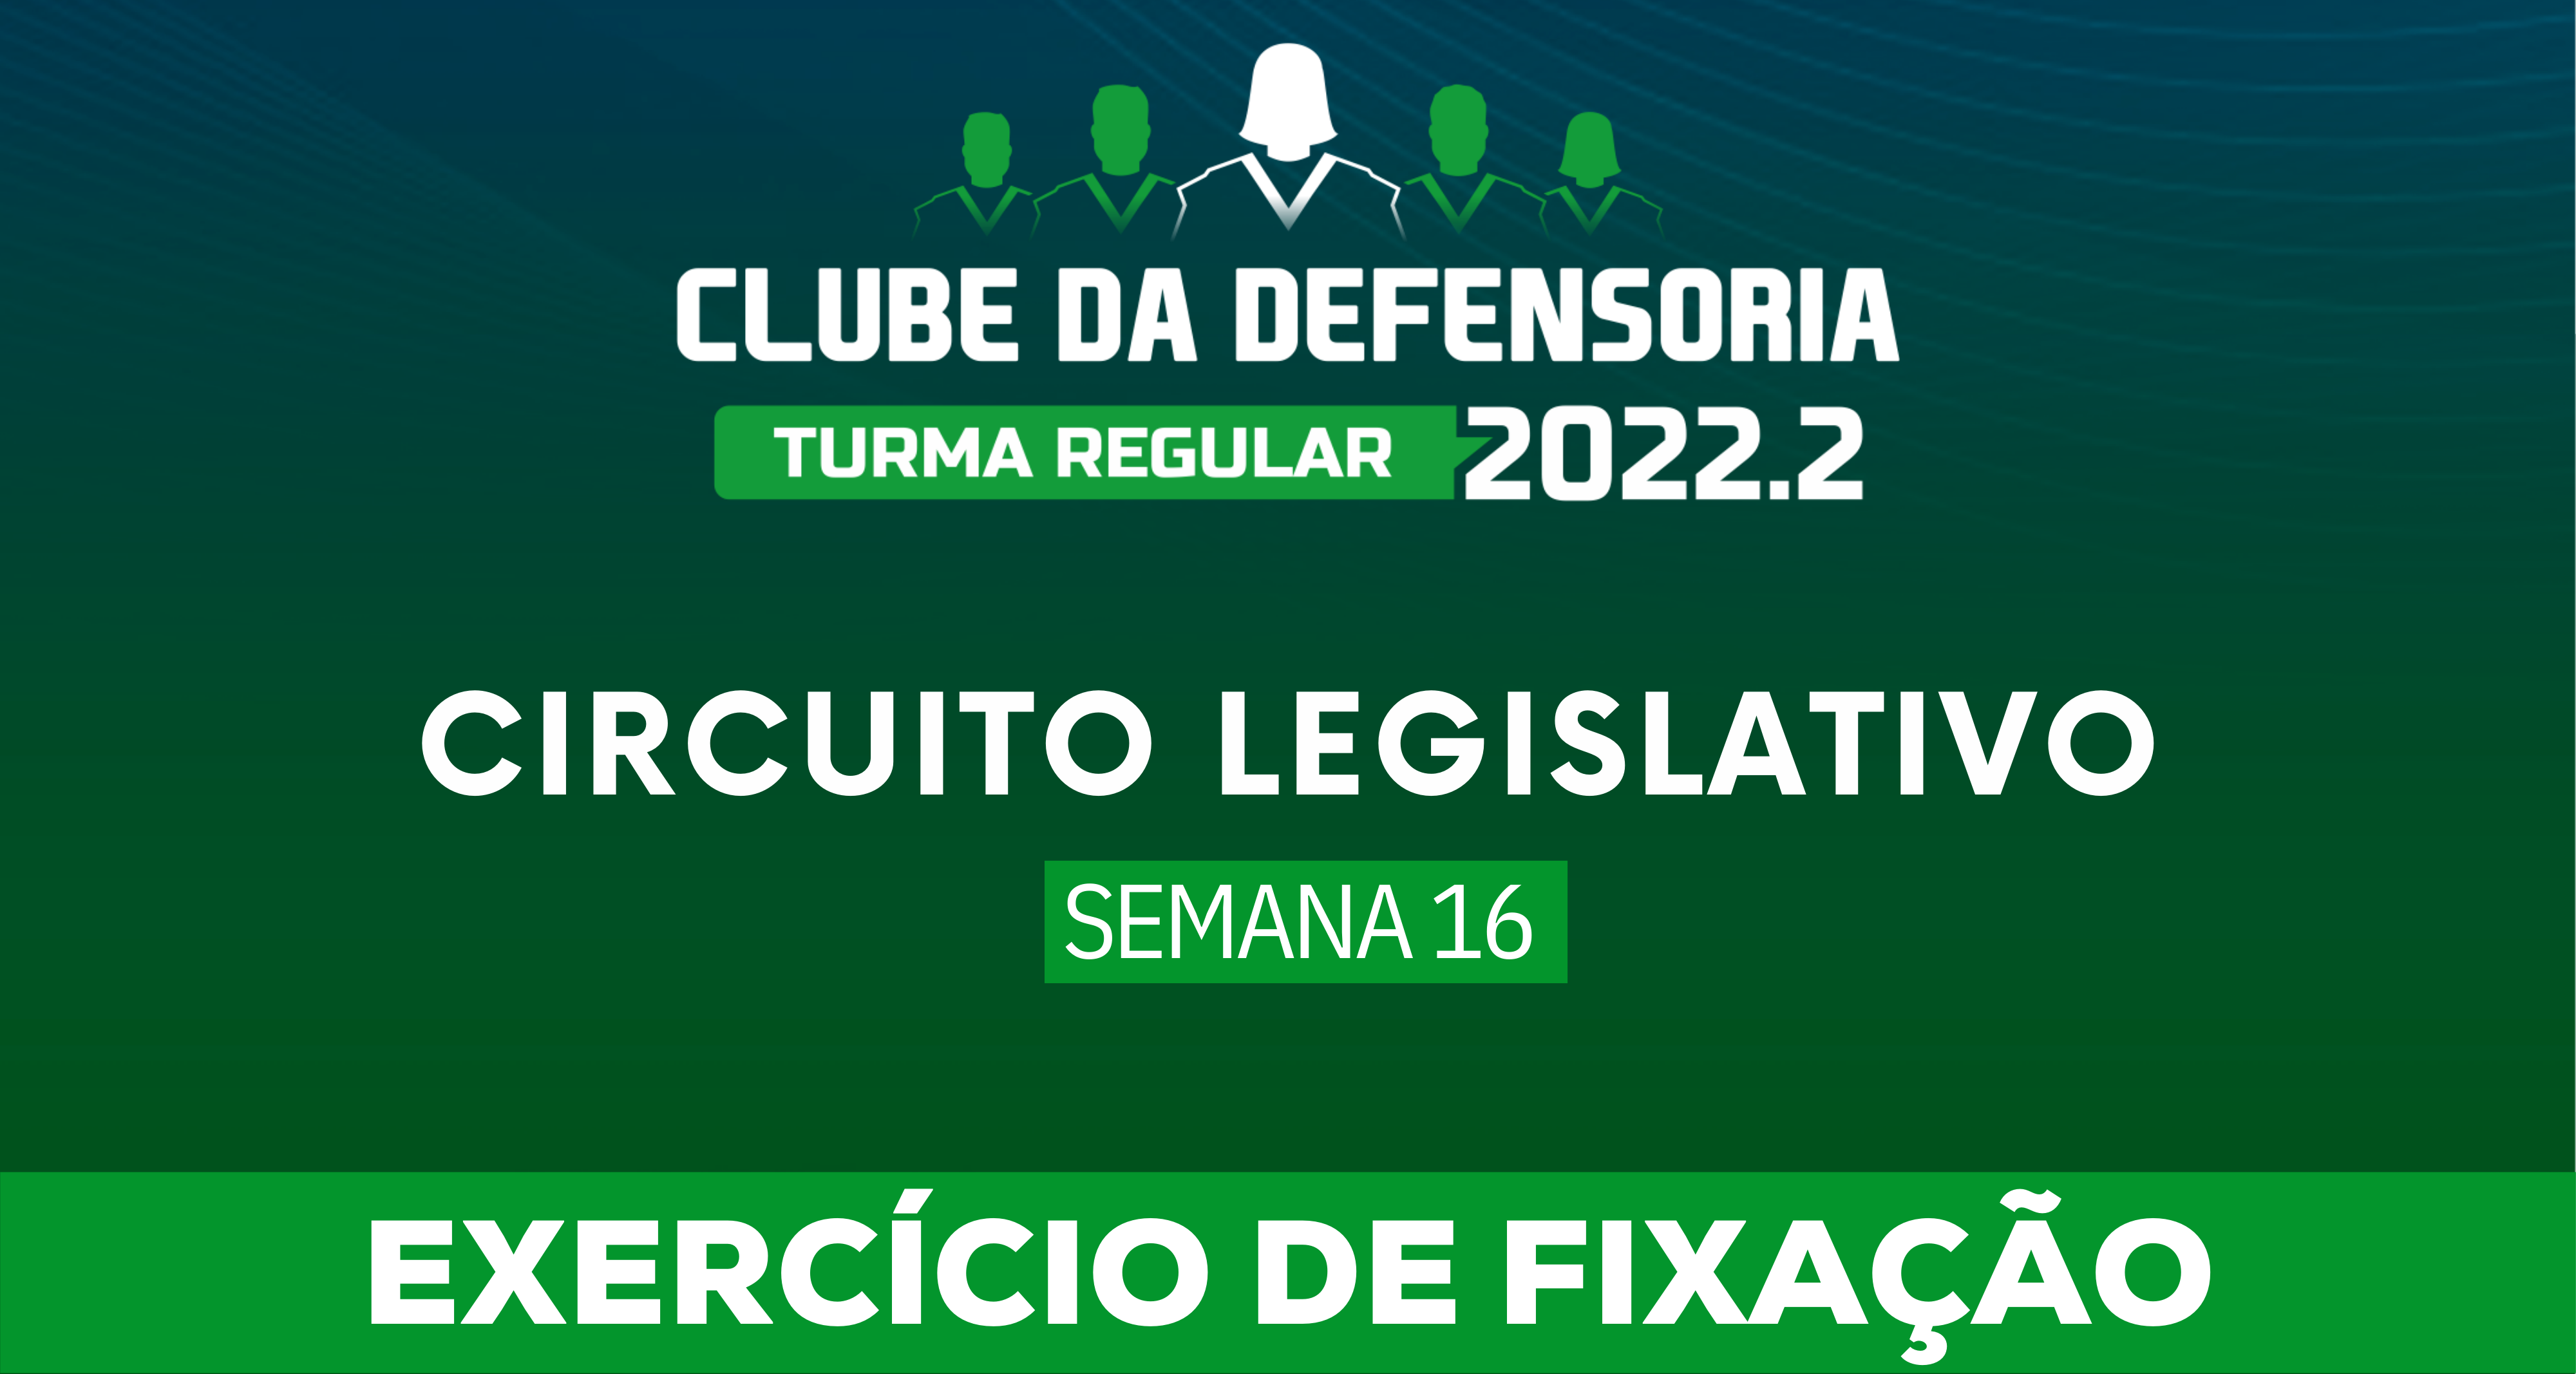 Circuito Legislativo 2022.2 (Clube da Defensoria - Semana 16)